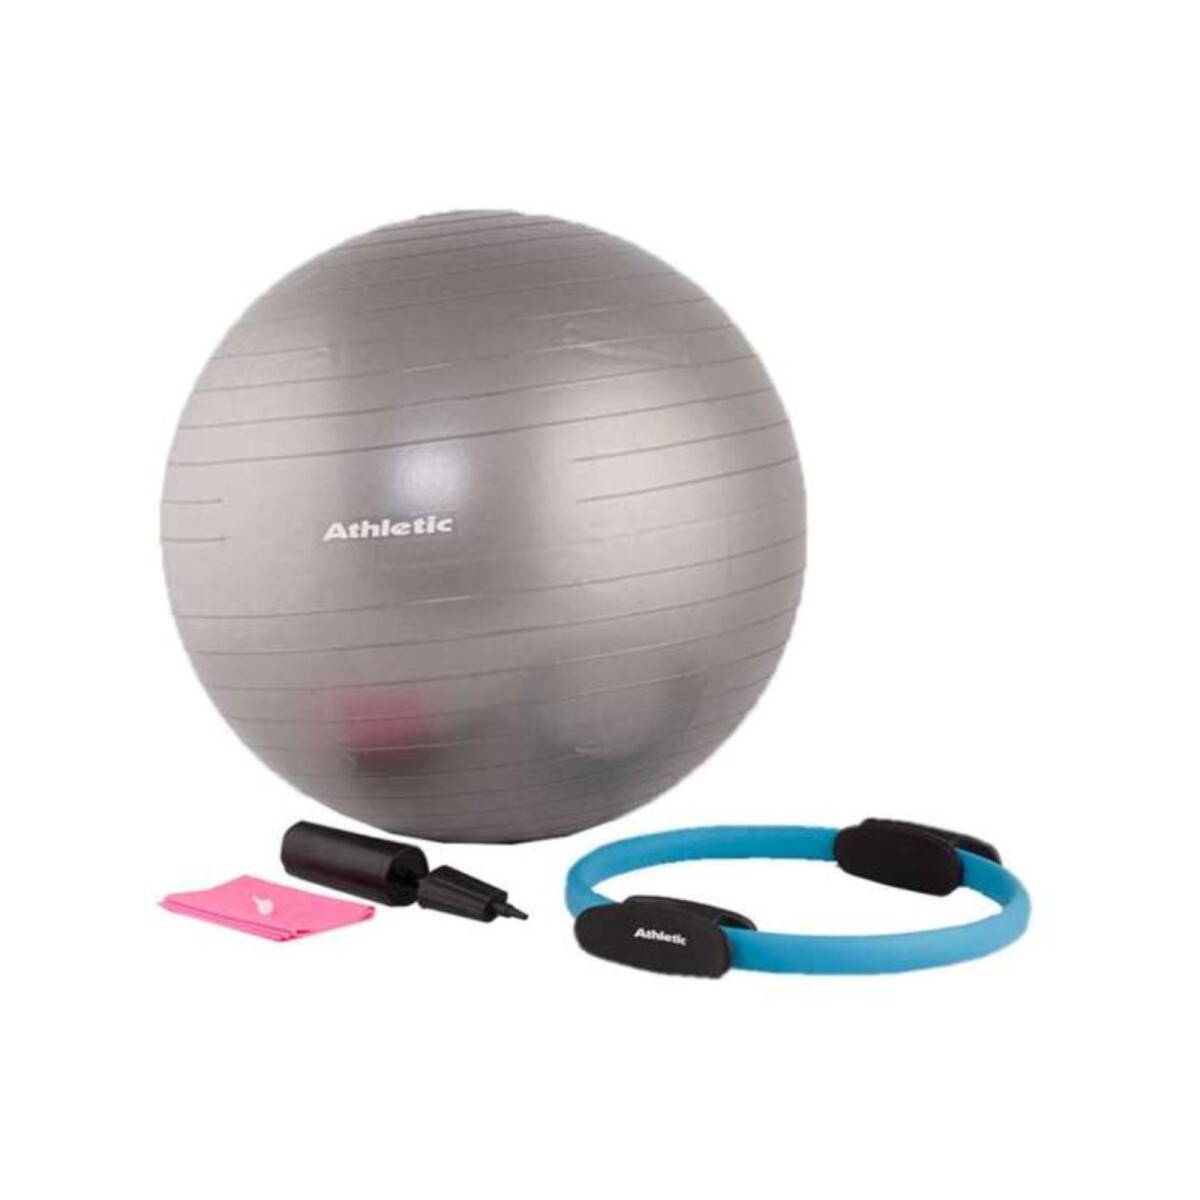 GiftRetail MO6339 - INFLABALL Petit ballon de Pilates